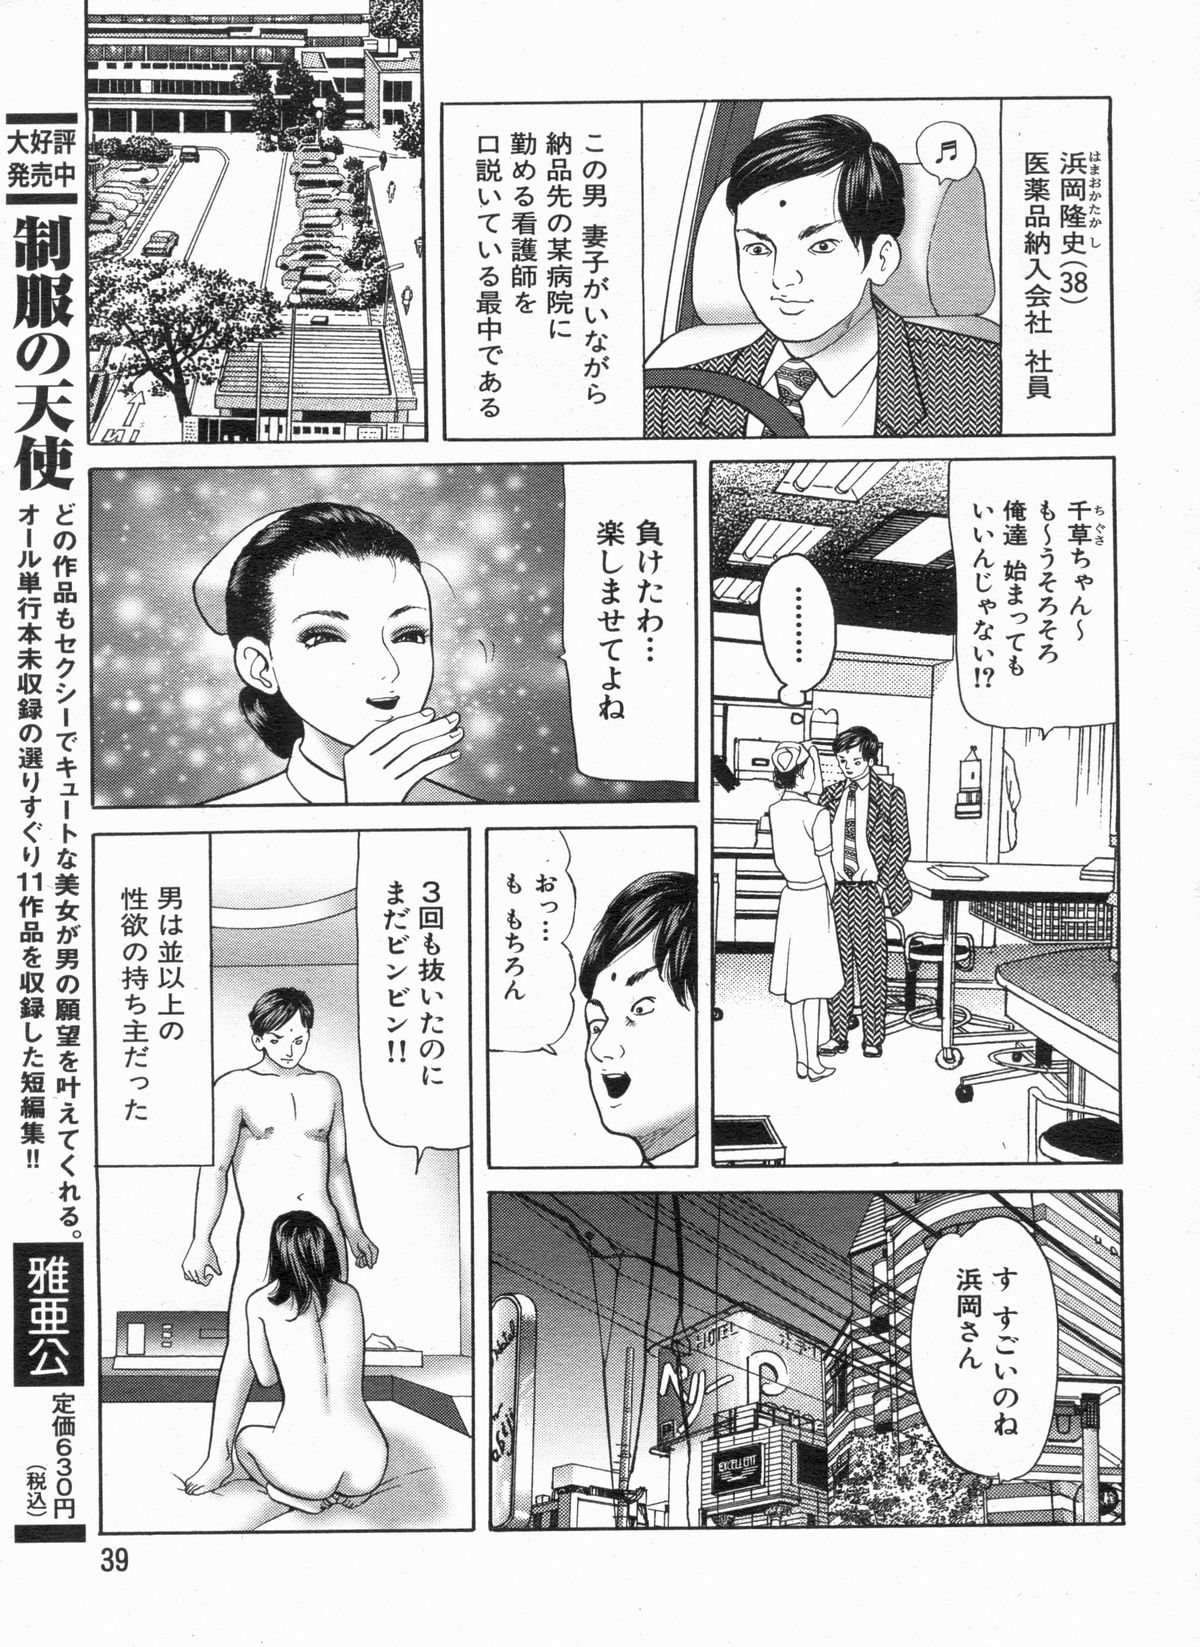 Manga Bon 2013-04 page 39 full